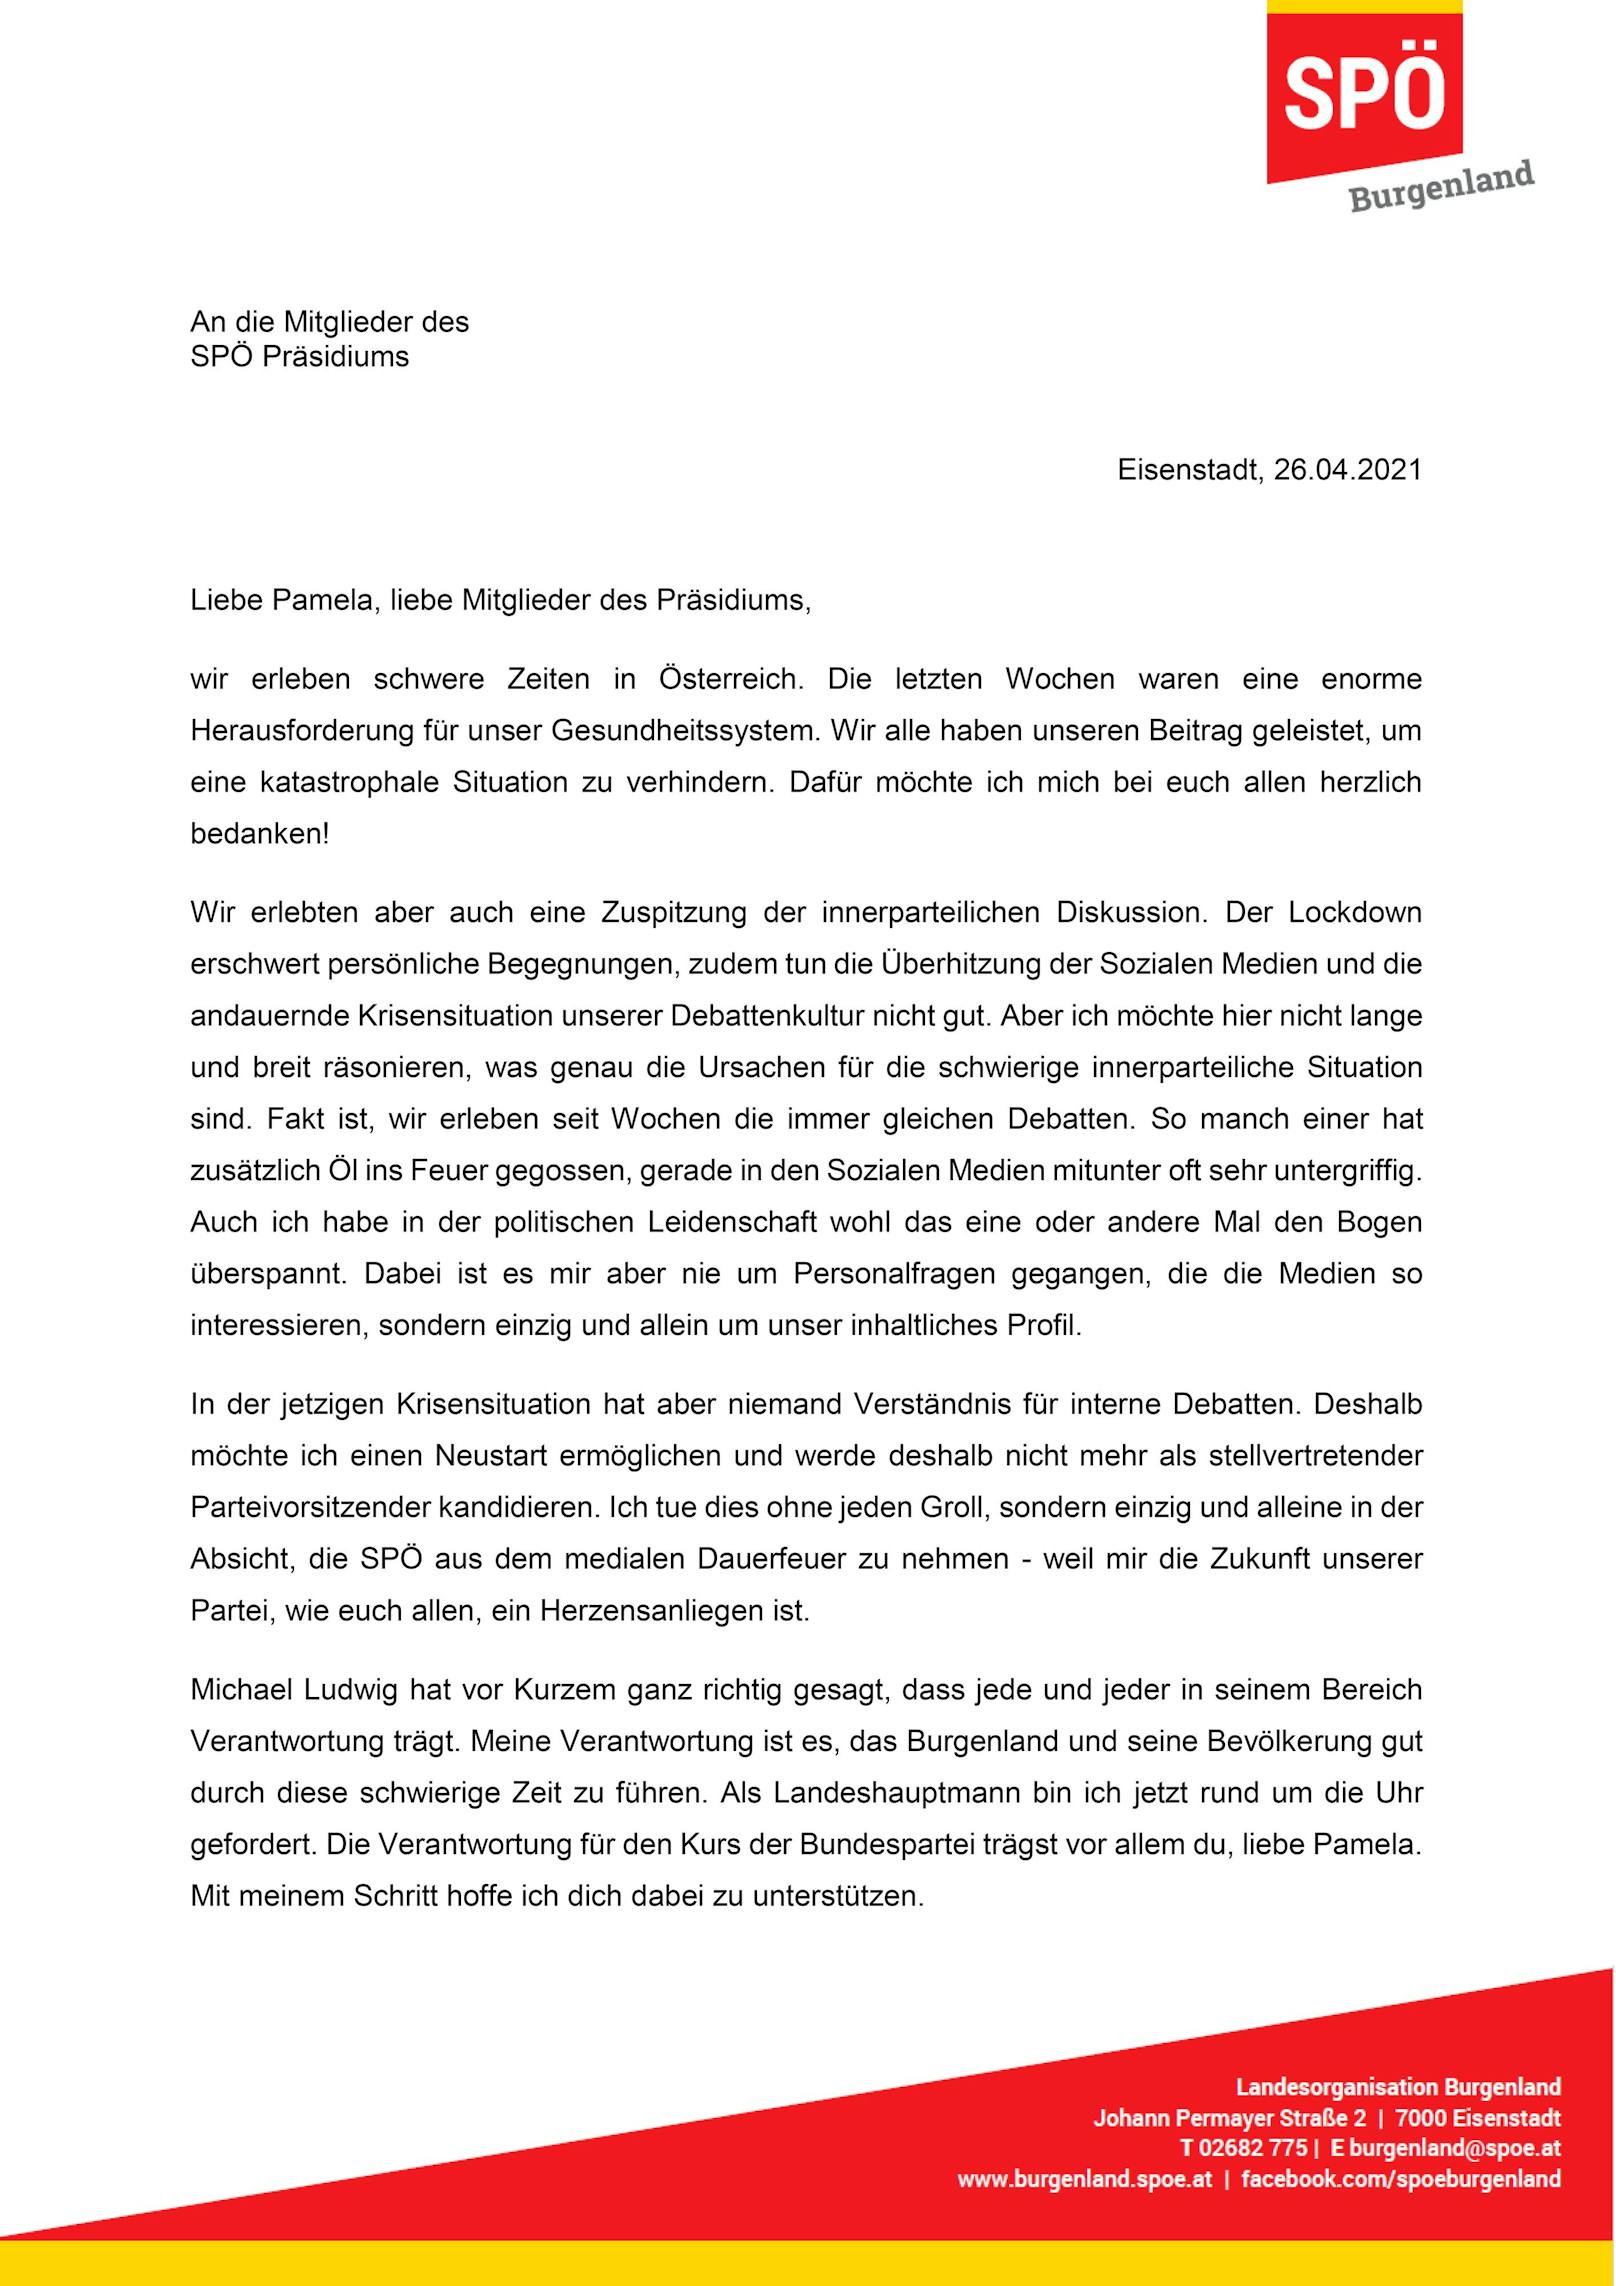 Der Brief von Hans Peter Doskozil an Pamela Rendi-Wagner im Wortlaut